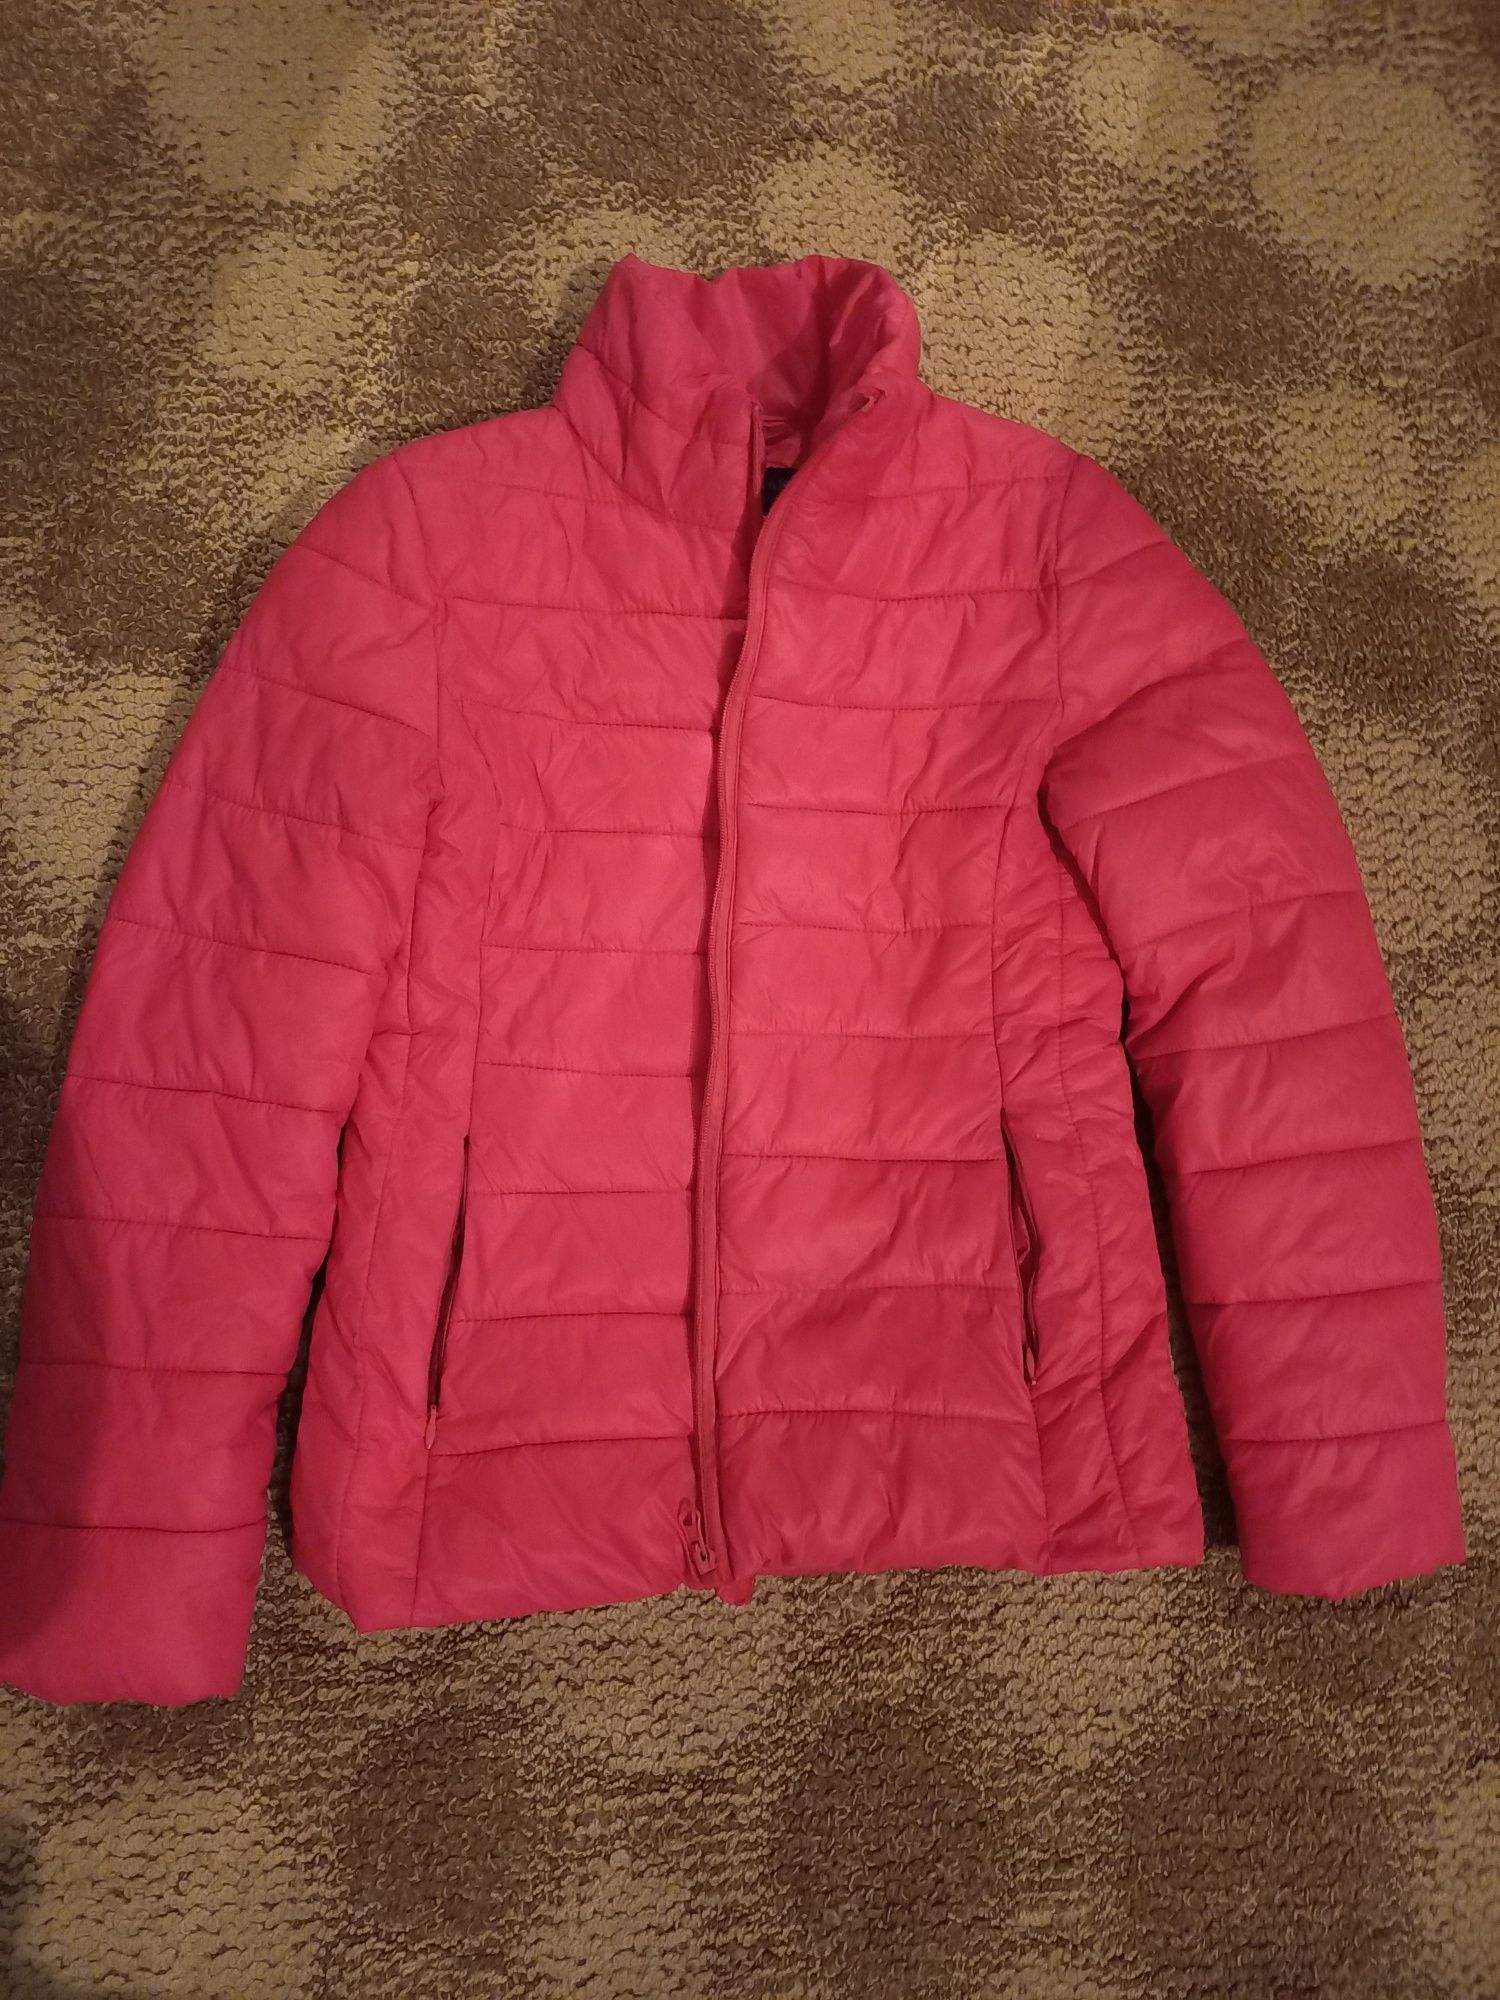 Куртка розовая, размер S